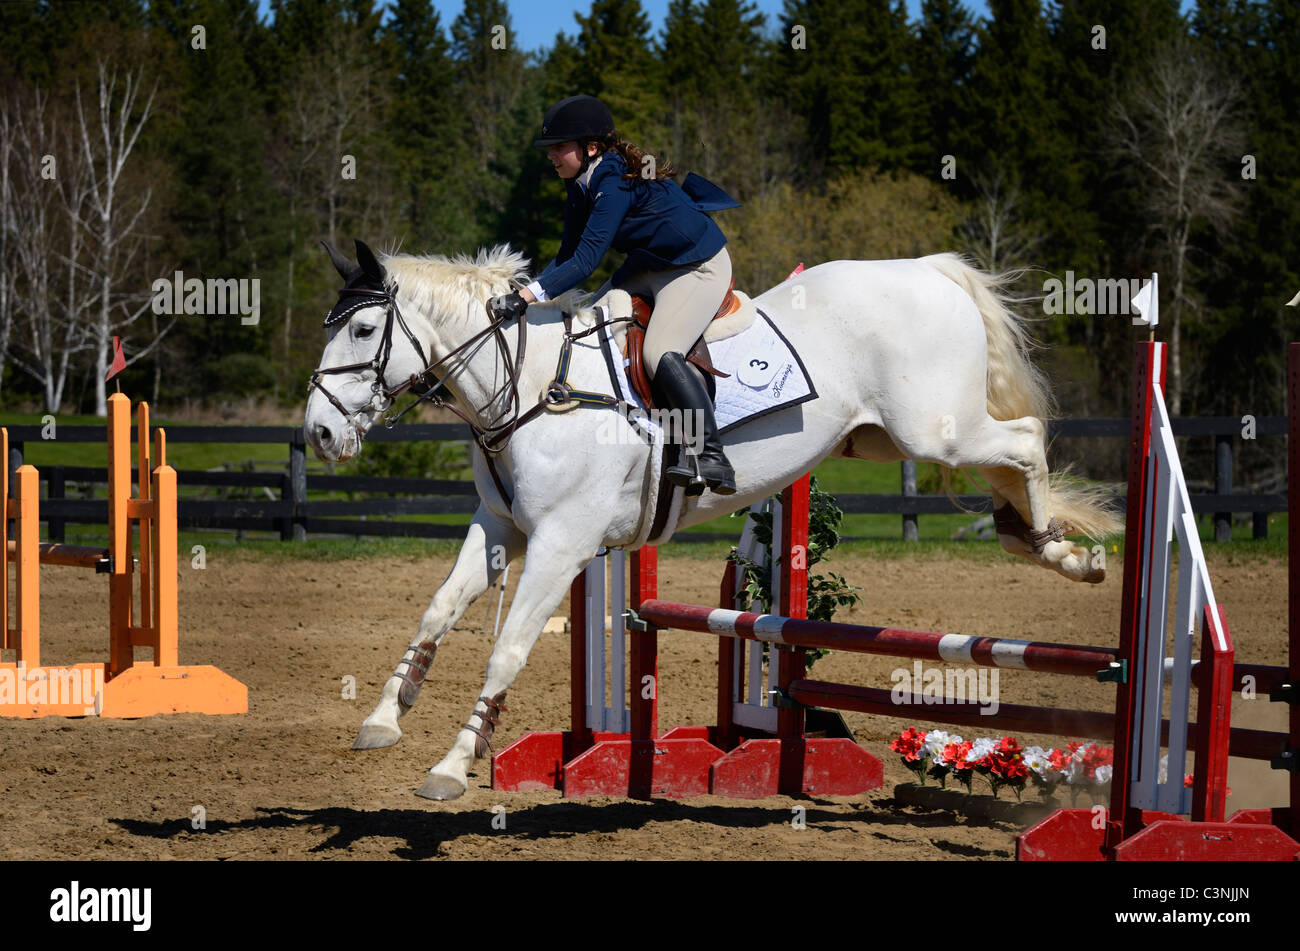 Graues Pferd einen Sprung über einen Zaun hochgefahren Oxer bei einem Outdoor-Pferdesport Show-Wettbewerb Stockfoto